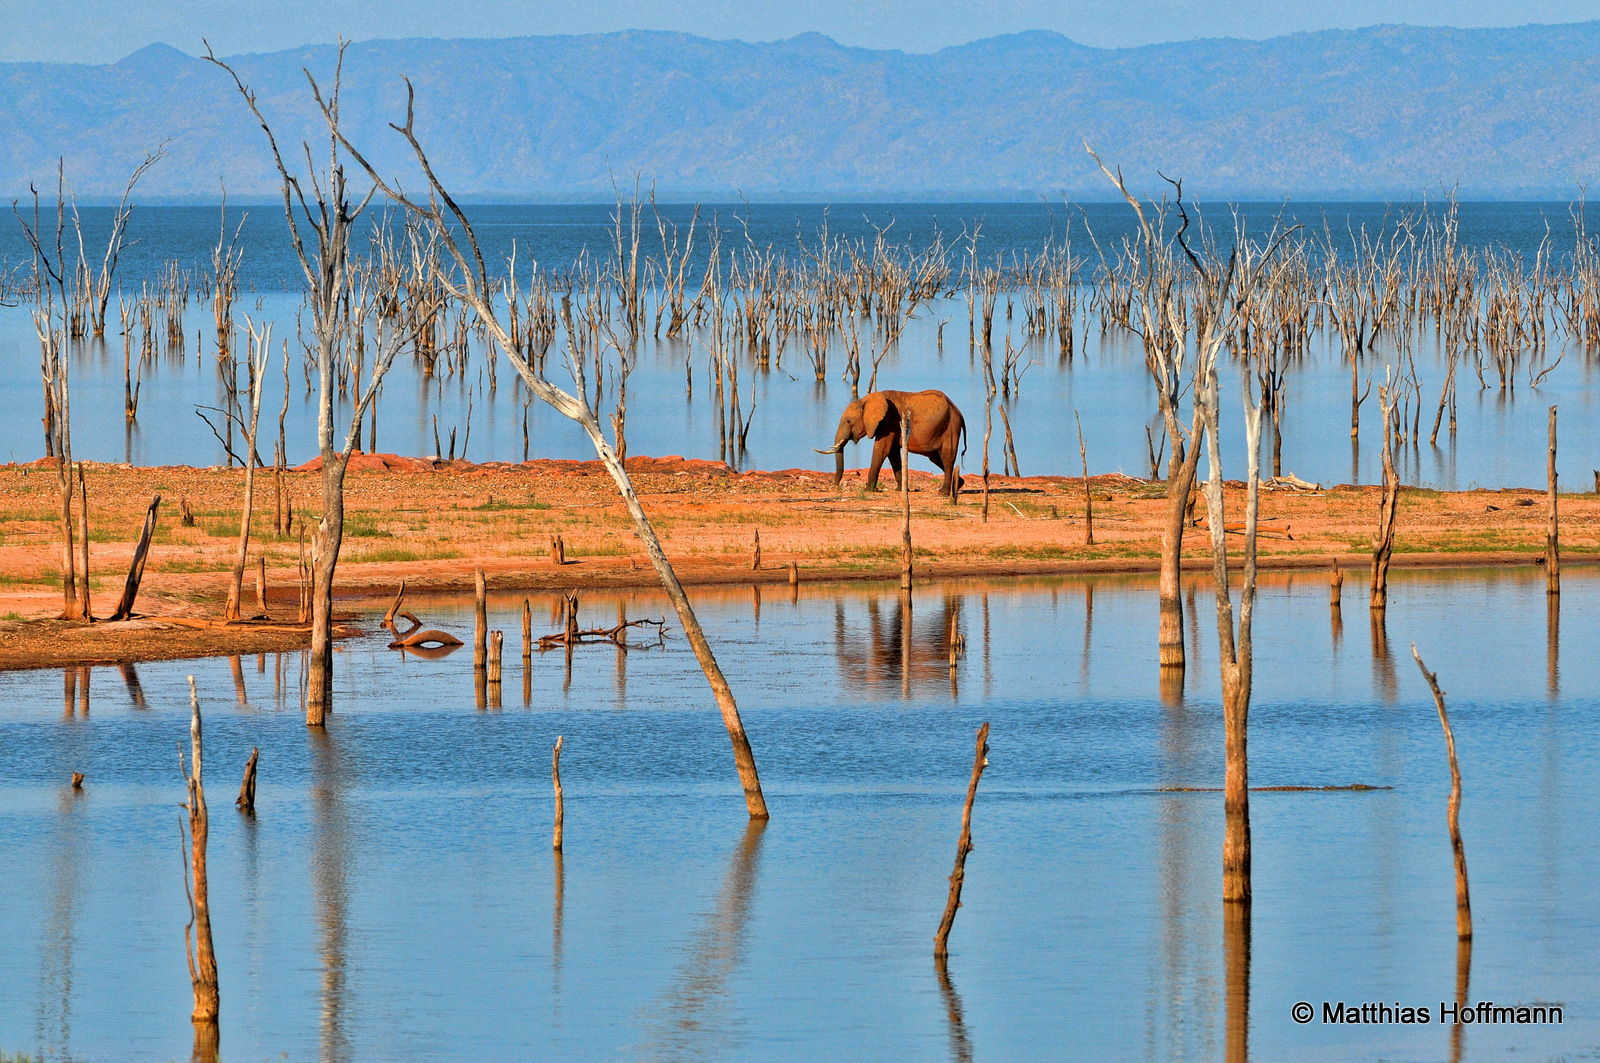 Elefant | Elephant | Lake Kariba | Zimbabwe